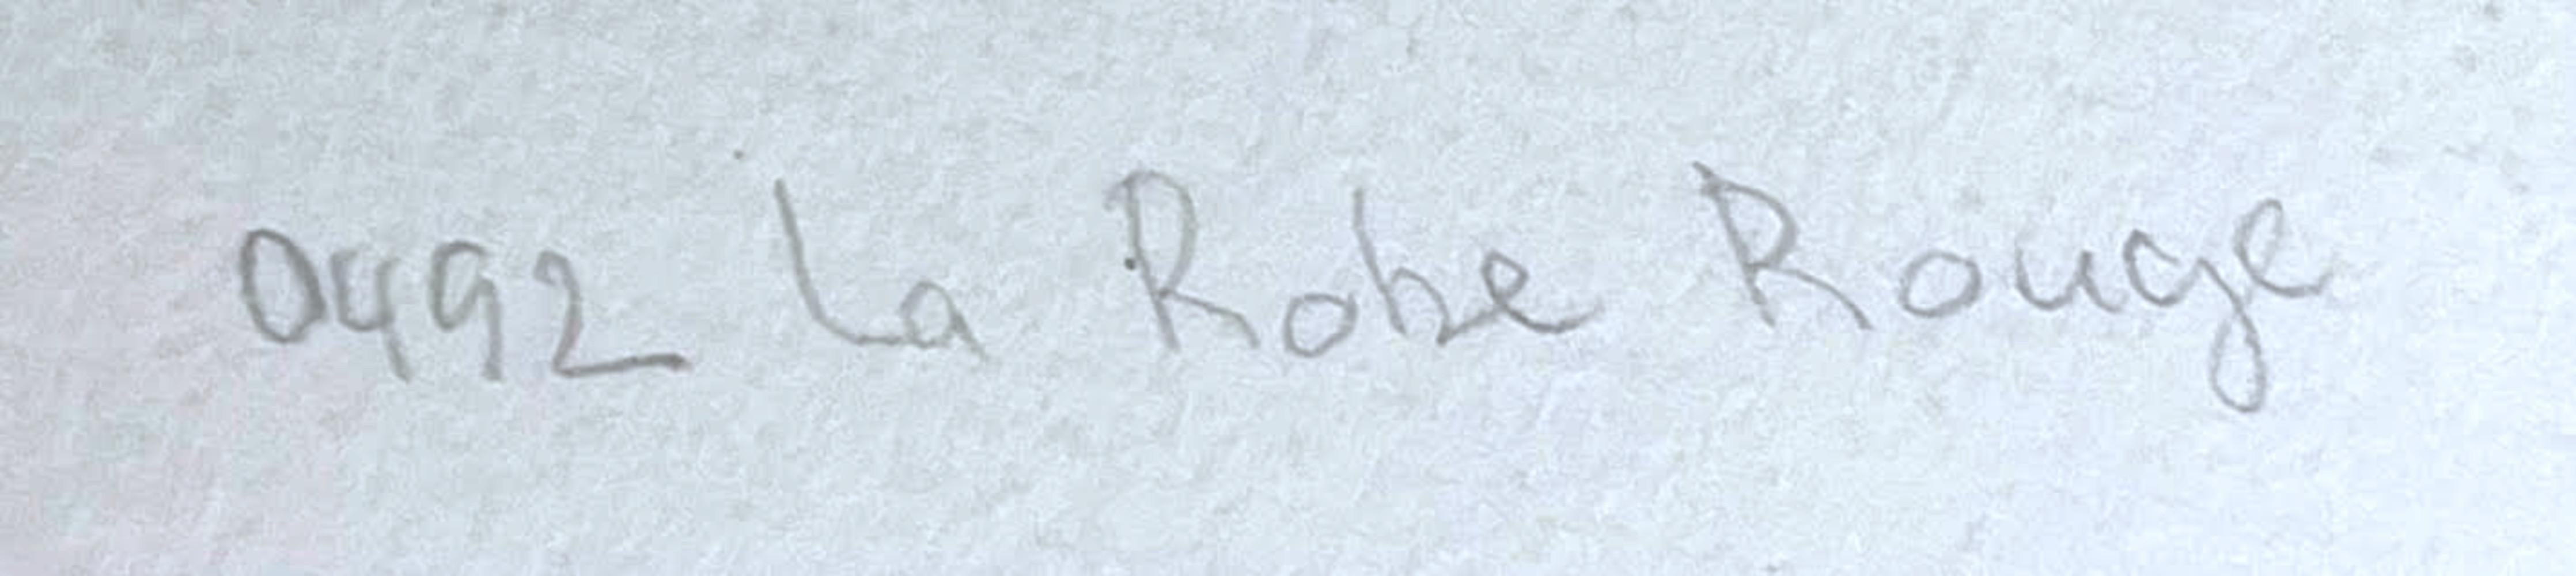 Niki de Saint Phalle
La Robe Rouge (Ulm-Chenivesse 48), 1970
Sérigraphie en dix-sept couleurs sur papier vélin d'Arches
Crayon signé et numéroté 28/115 au recto et titré au verso par Niki de Saint Phalle, avec le numéro d'inventaire de l'artiste.
29